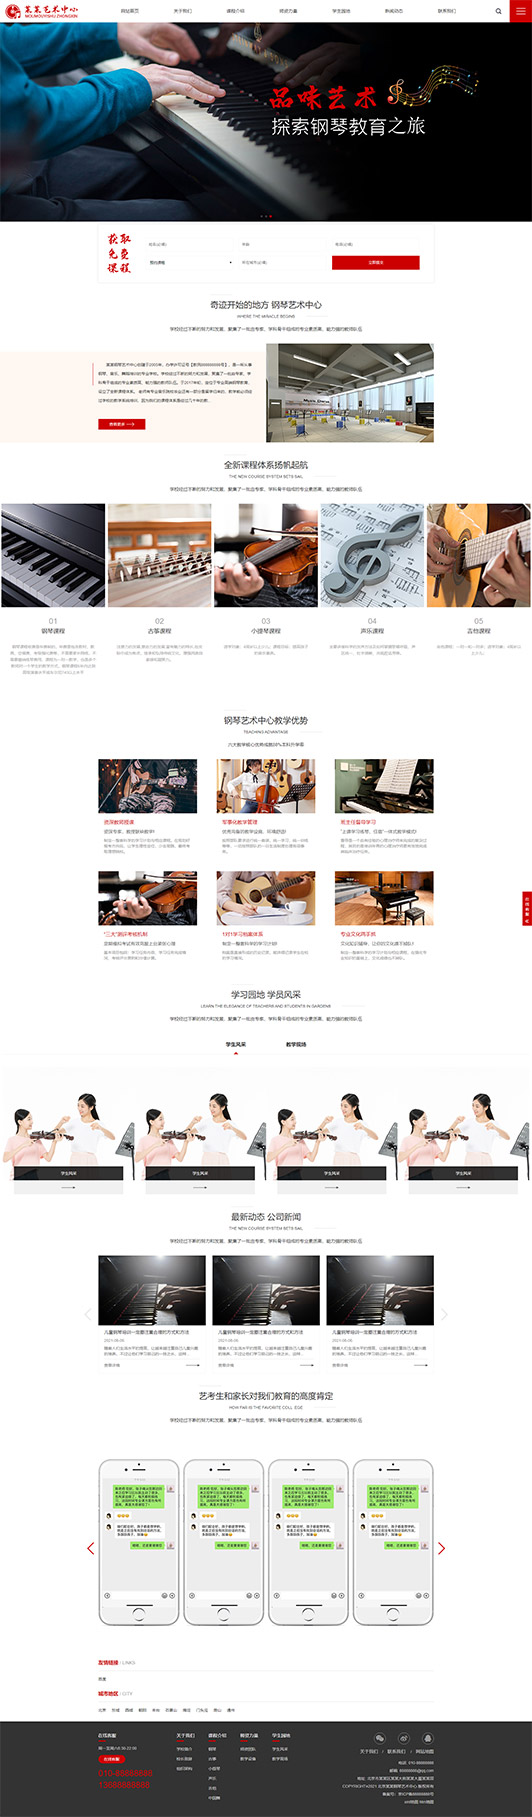 昭通钢琴艺术培训公司响应式企业网站